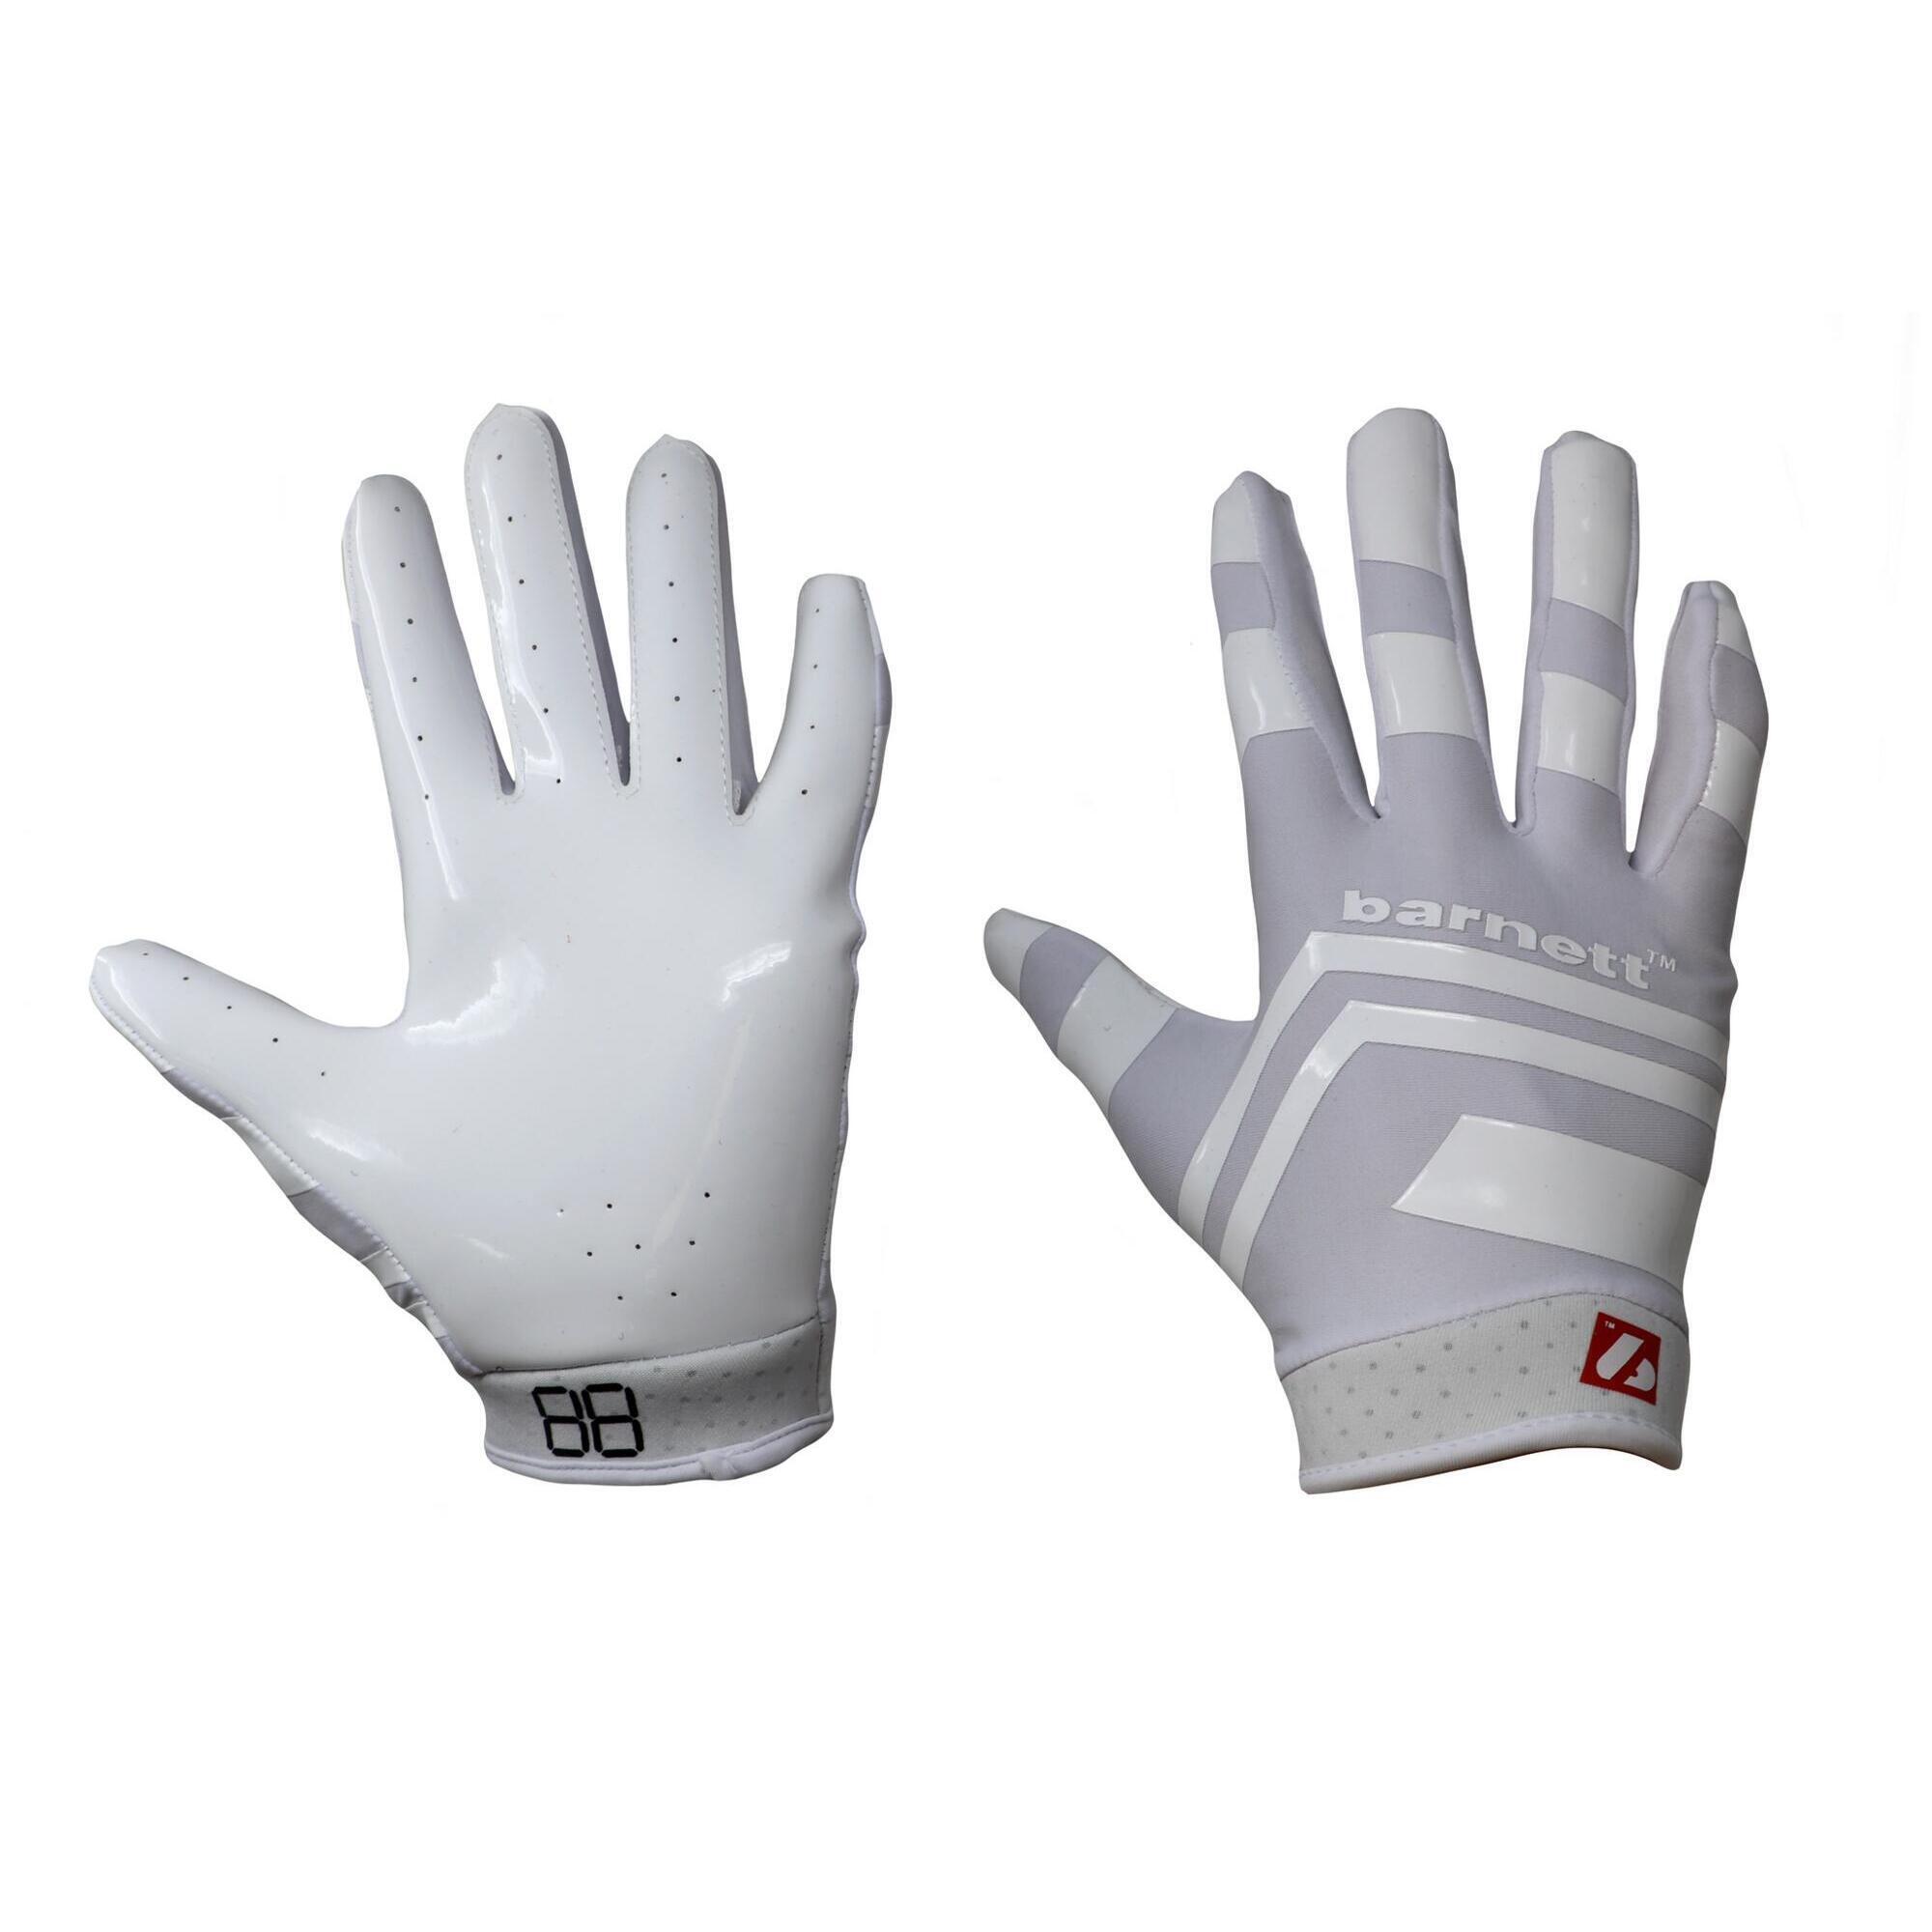 BARNETT  pro receiver american football gloves, RE, DB, RB, White FRG-03